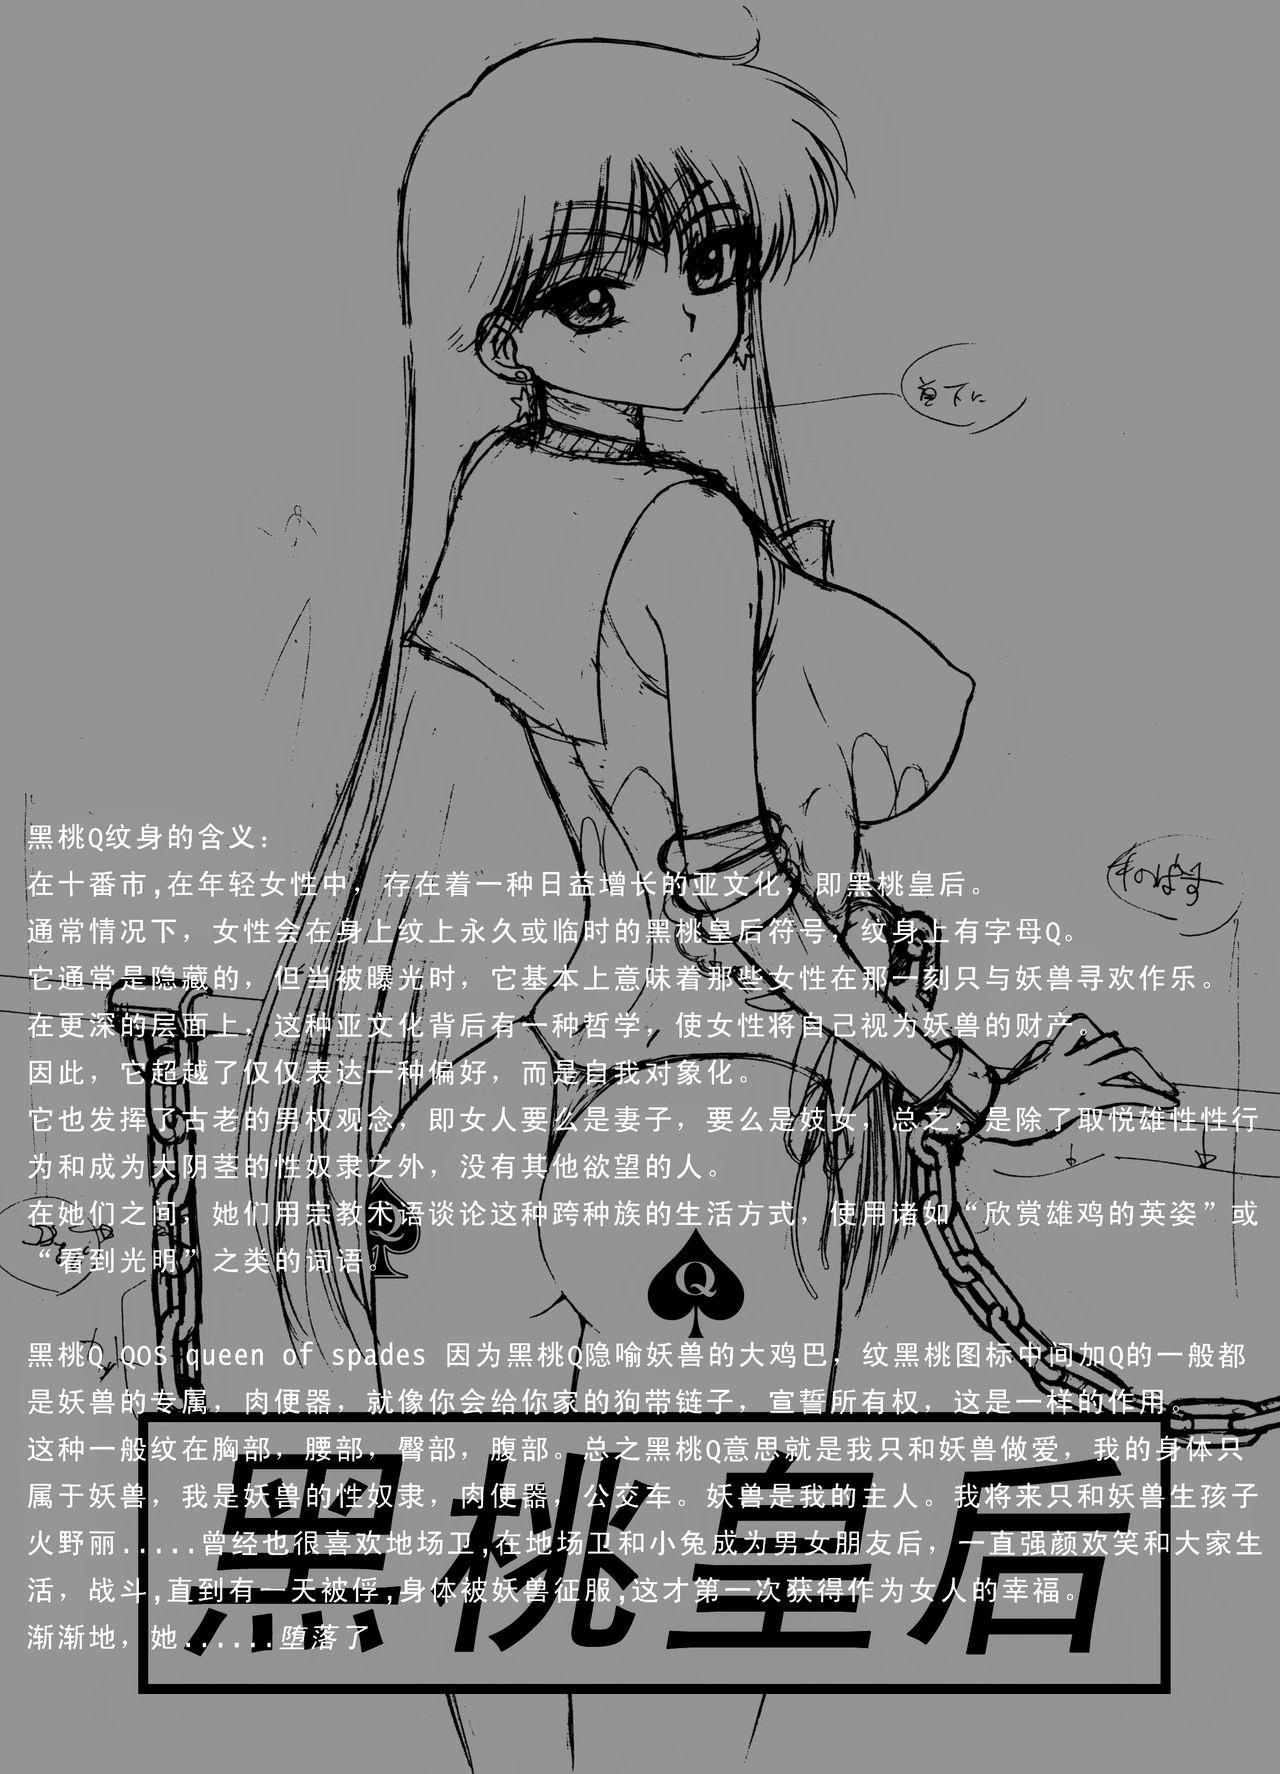 Petite QUEEN OF SPADES - 黑桃皇后 - Sailor moon Twerking - Page 5